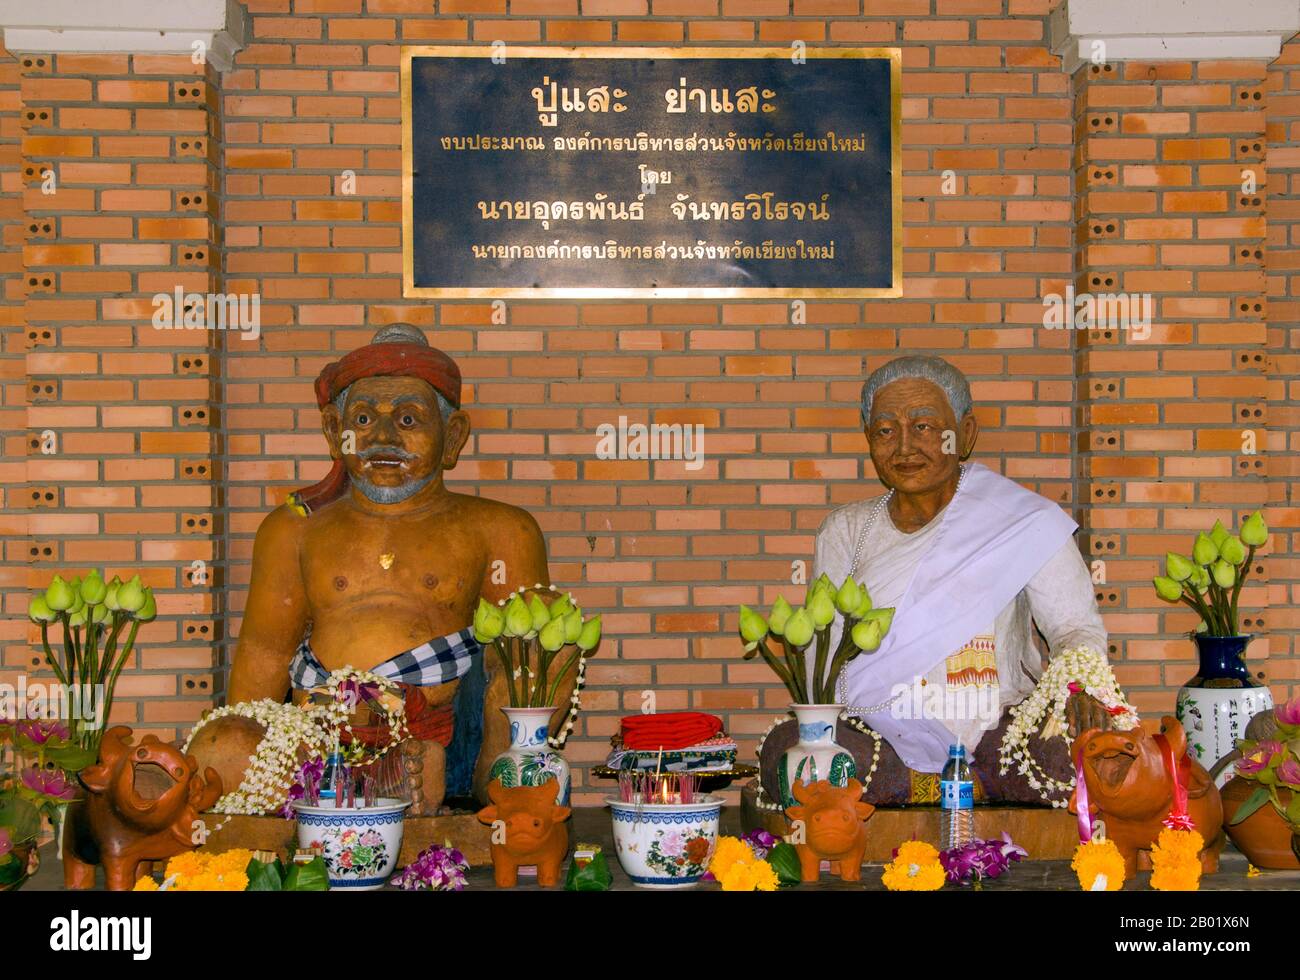 Thaïlande : images de pu SAE et ya SAE, esprits gardiens de Chiang mai, Tambon Mae Hia, Chiang mai, nord de la Thaïlande. Chaque fin mai ou juin, vers le début de la saison des pluies, deux rituels peu connus mais archaïques ont lieu dans les environs de Chiang mai, dans le nord de la Thaïlande. Ce sont les cérémonies liées pu SAE et ya SAE, qui sont censées être antérieures à l'introduction du bouddhisme dans le nord de la Thaïlande. Les traditions qu'ils englobent de la même manière précèdent la colonisation thaïlandaise et même mon dans la région, et sont associées aux Lawa. Banque D'Images